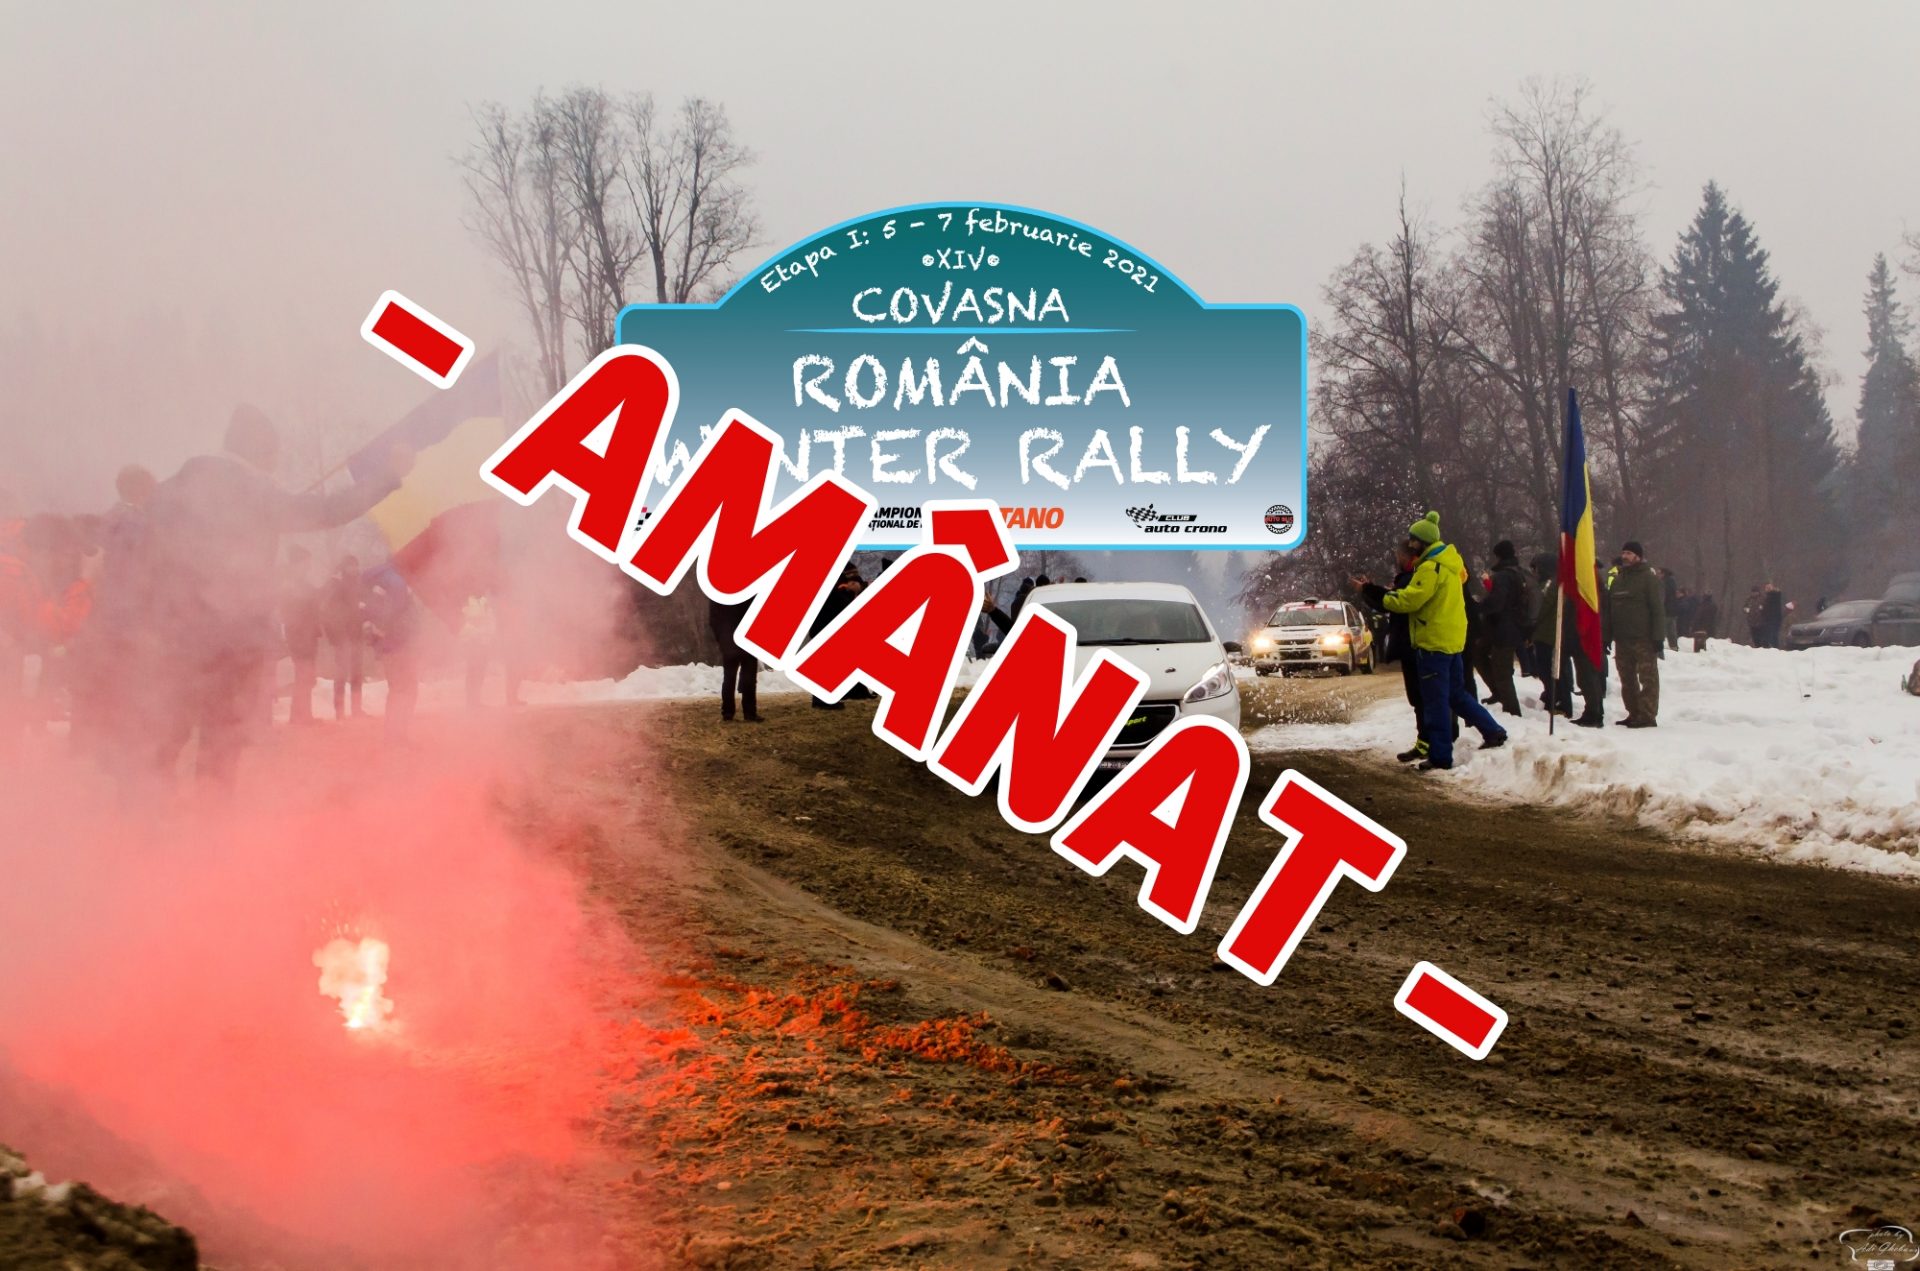 România Winter Rally 2021 este amânat! UPDATE: Cursa are loc în 19-20 februarie